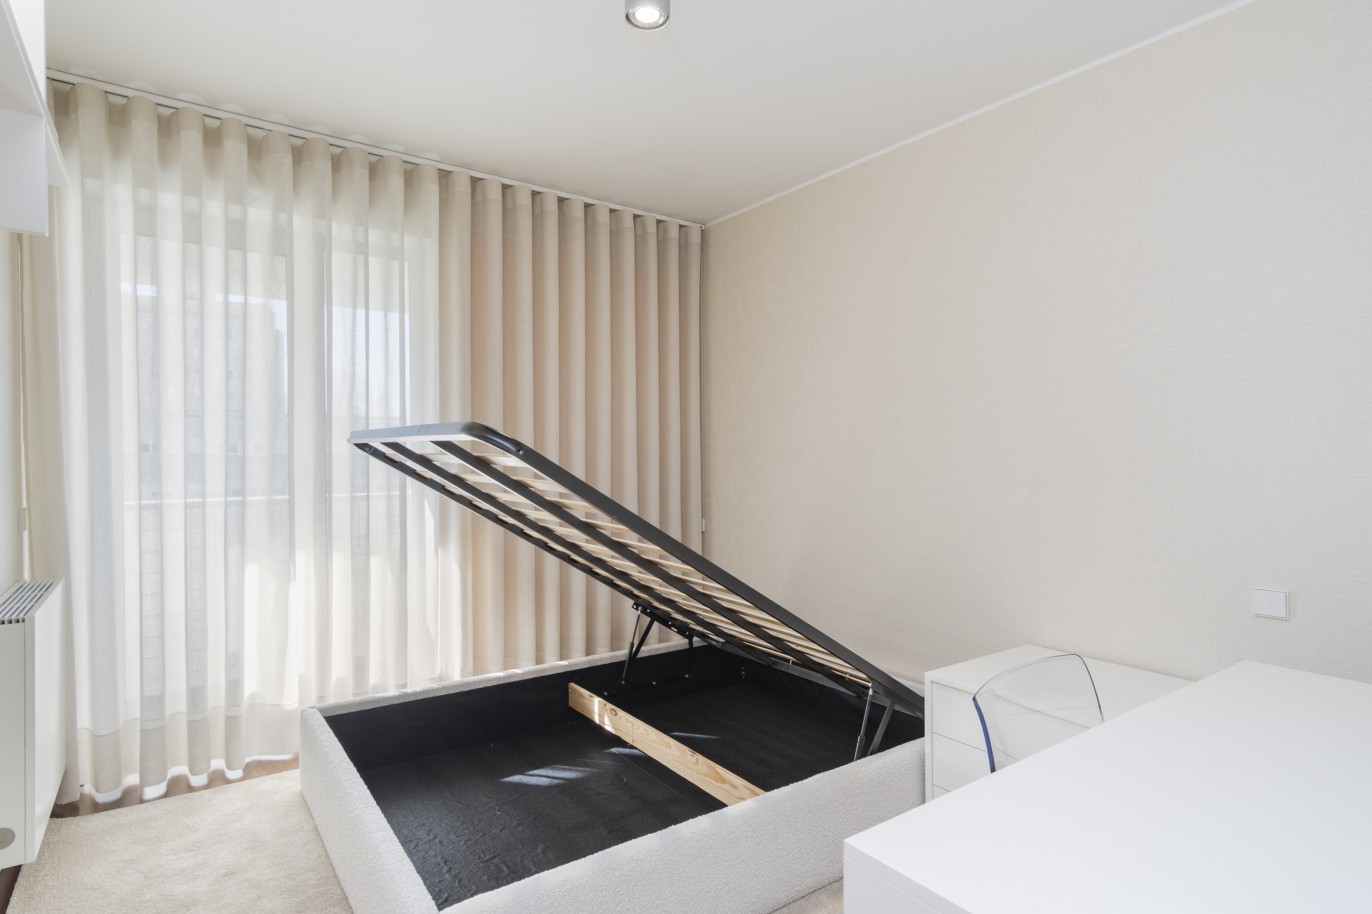 3 Bedroom Duplex Apartment with balcony, for sale, in Boavista, Porto, Portugal_217711